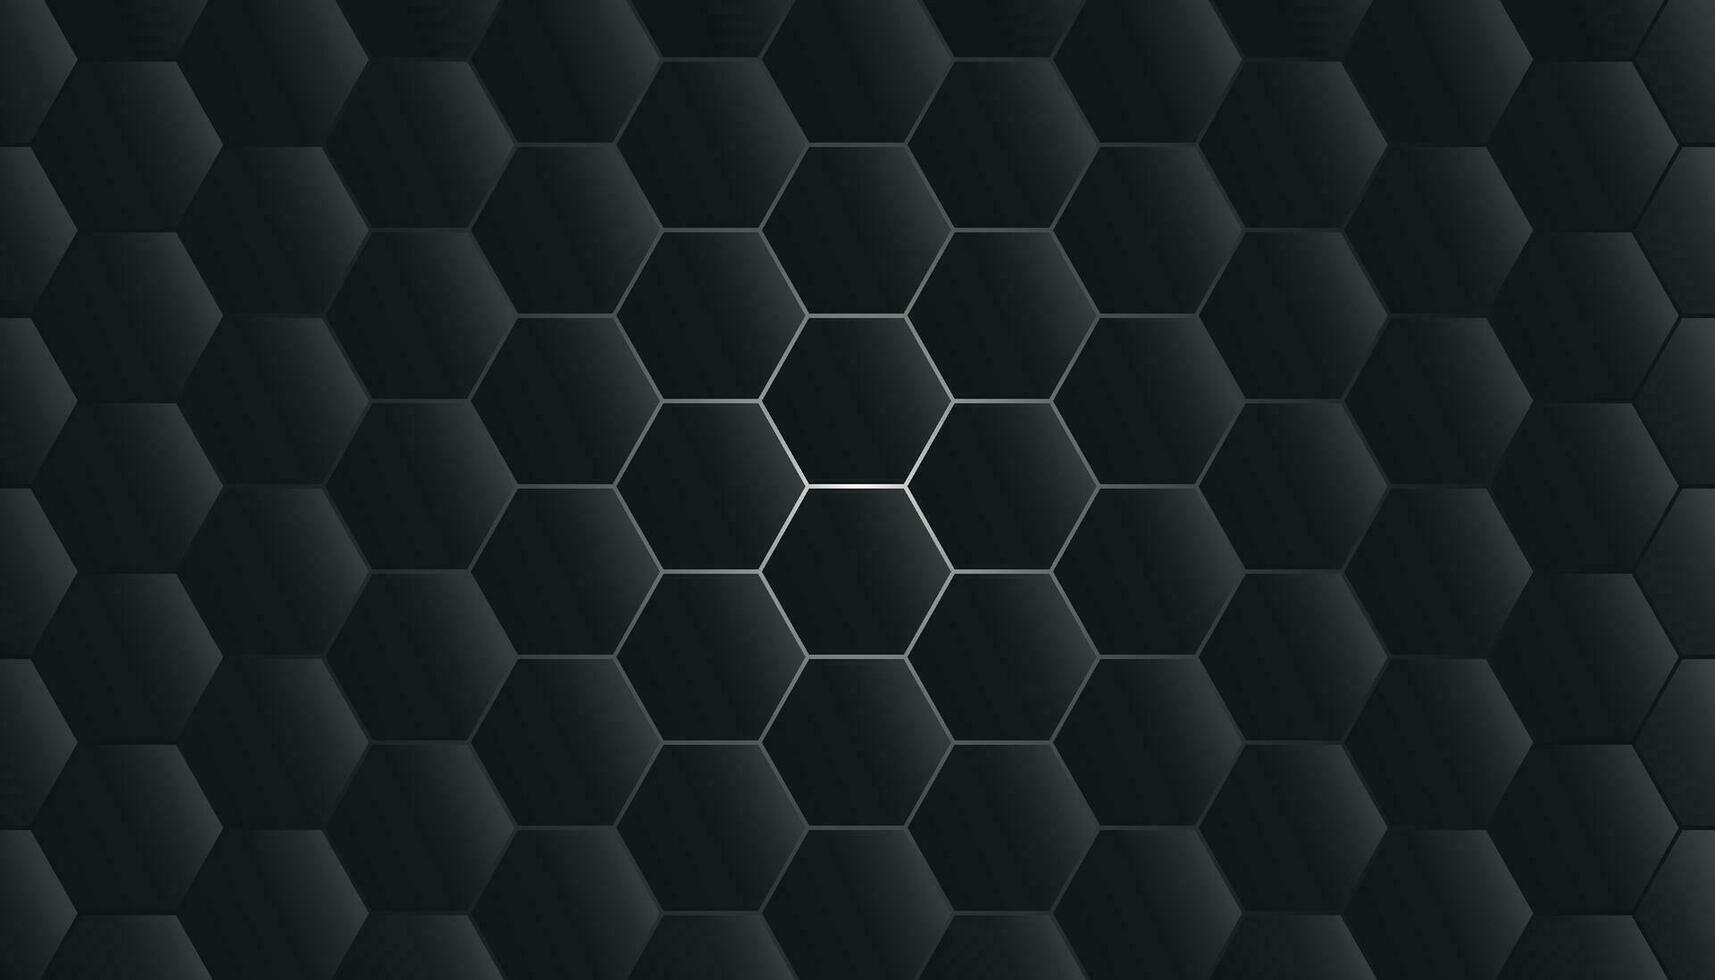 zwart zeshoek achtergrond met een wit licht. zwart zeshoek achtergrond. abstract meetkundig zeshoek patroon. modern meetkundig zeshoek vector